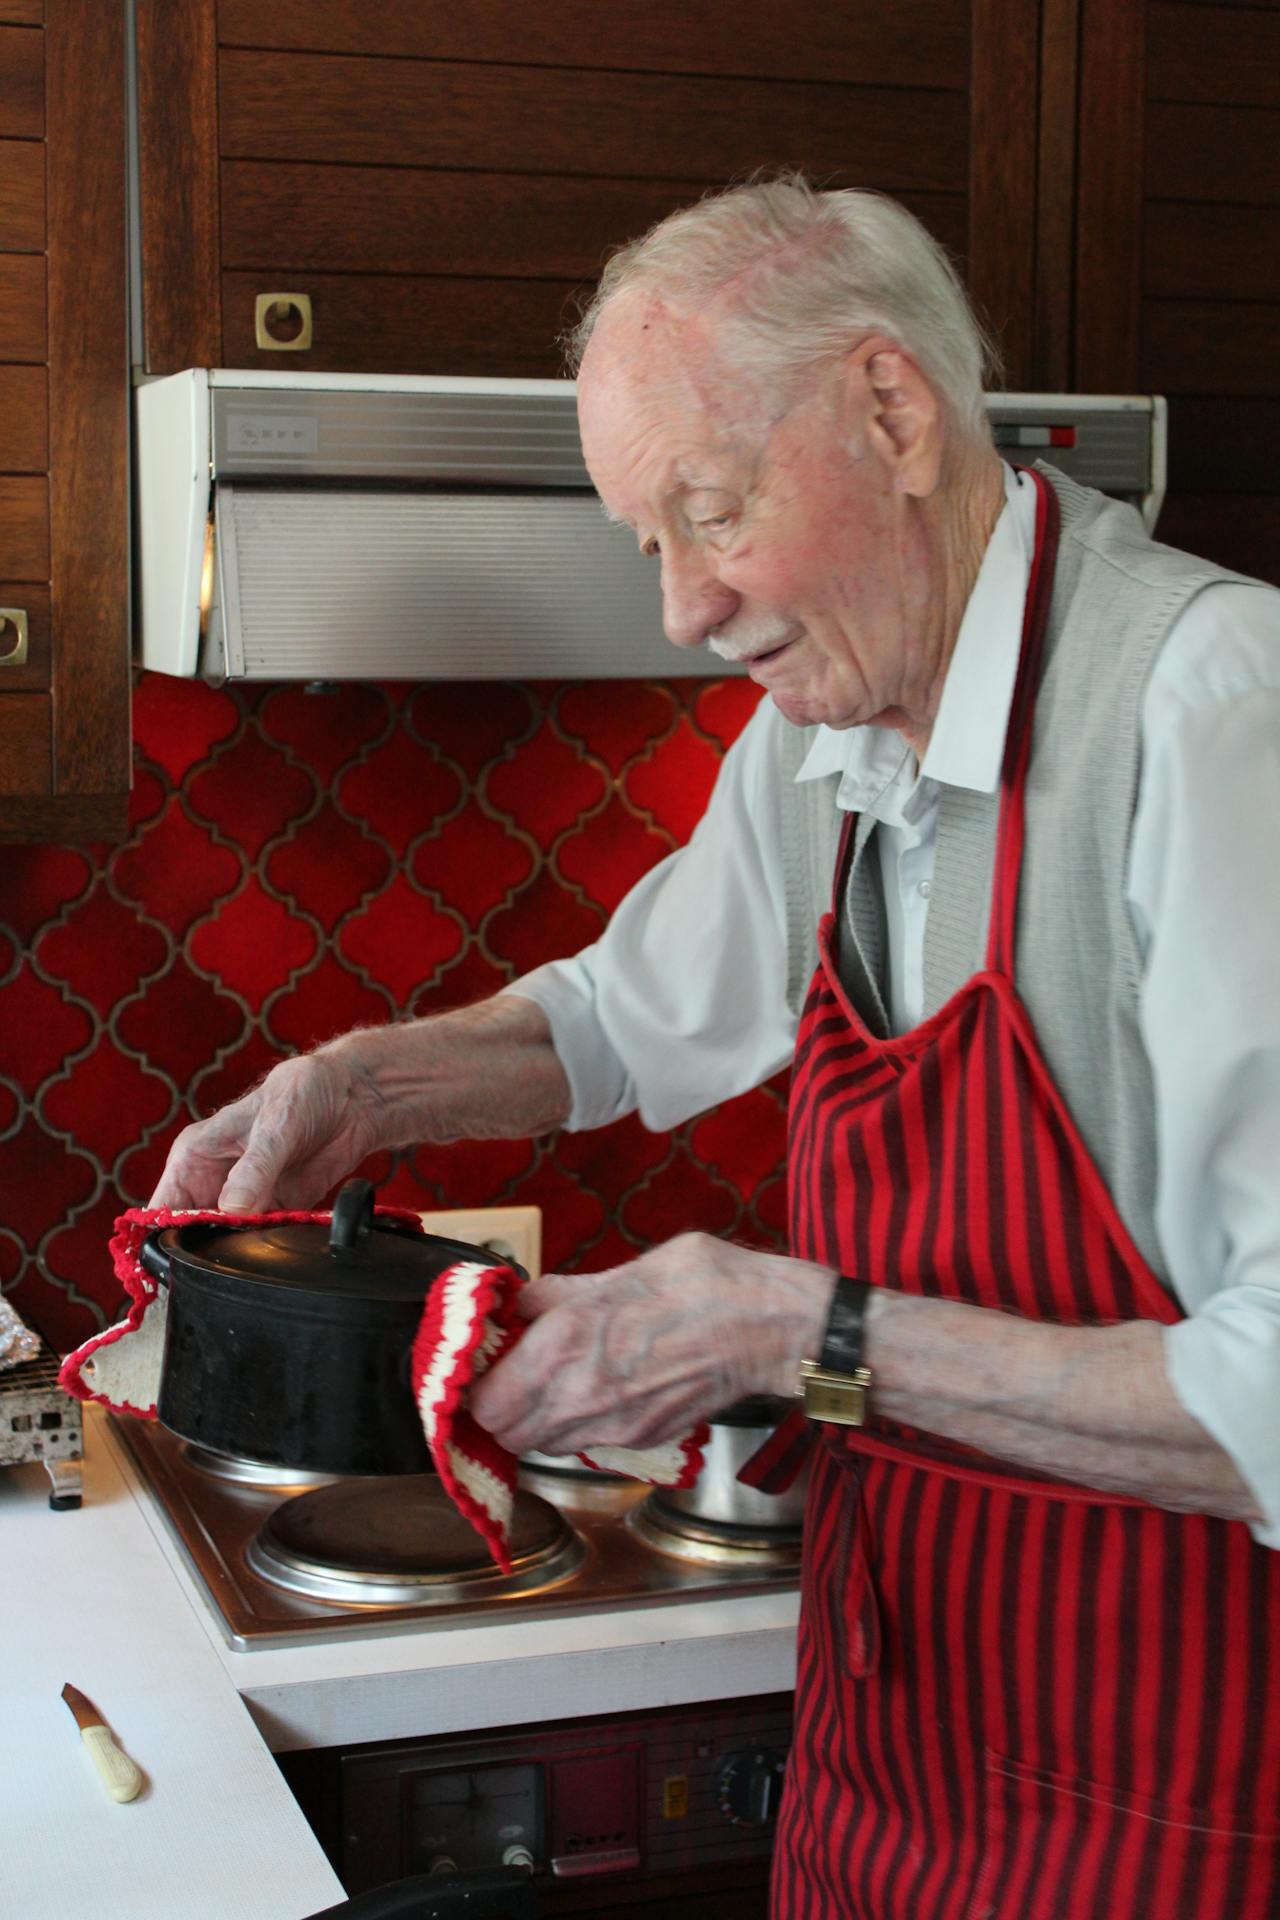 Een oudere man in een schort bereidt eten in een keuken.